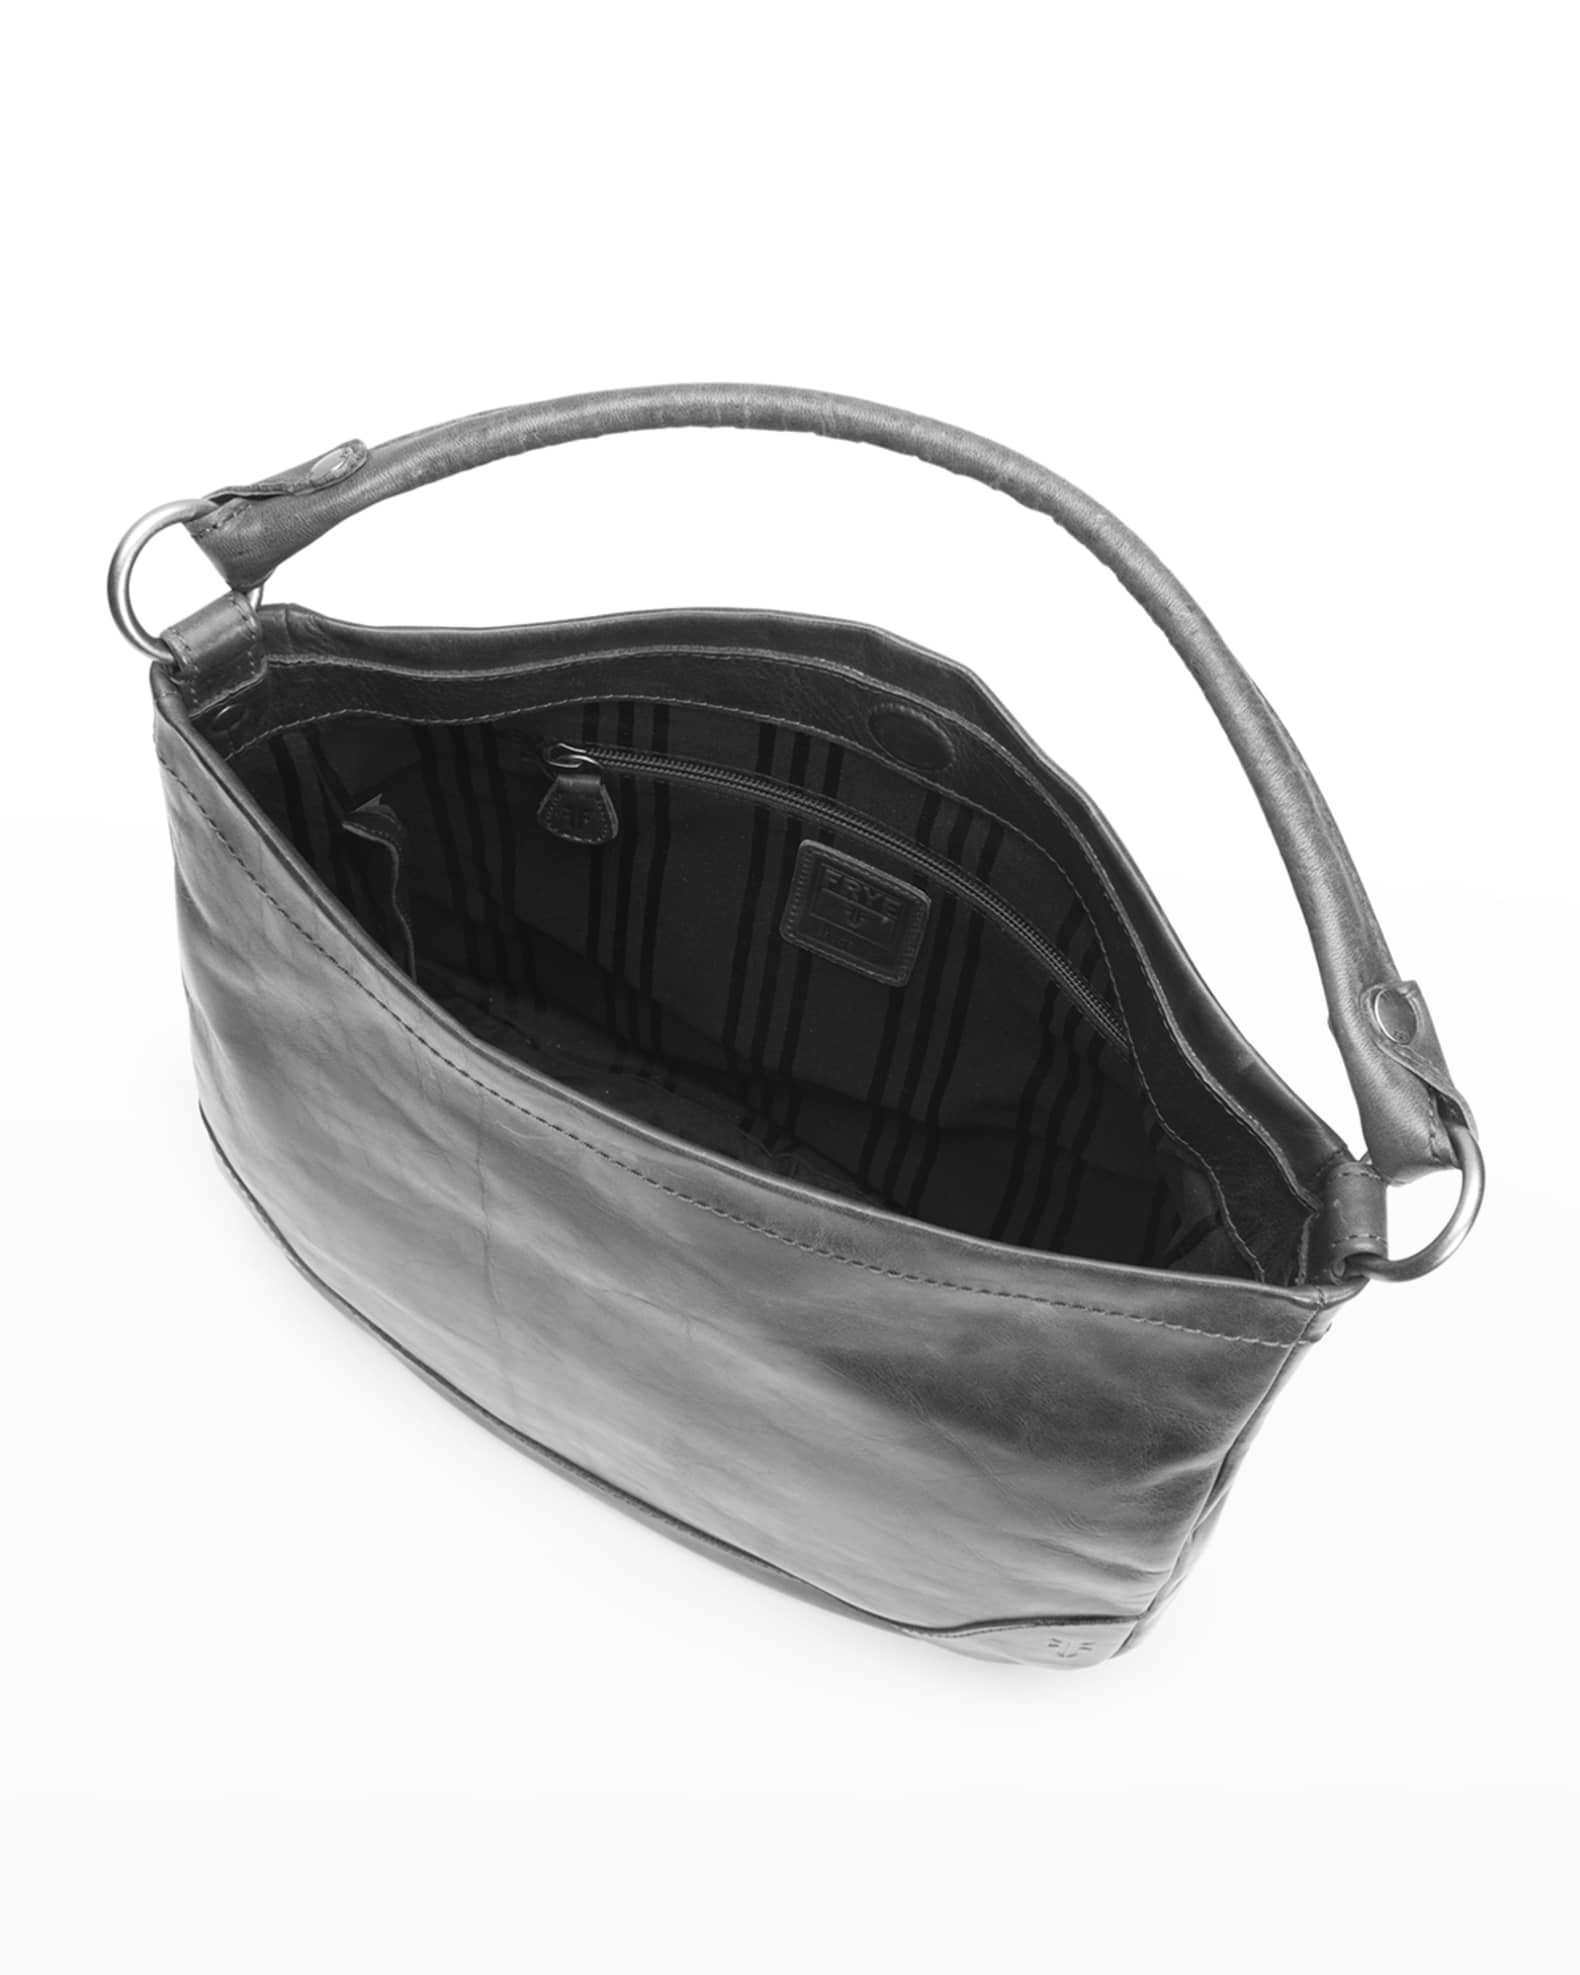 Frye Melissa Hobo Italian Leather Bag | Neiman Marcus